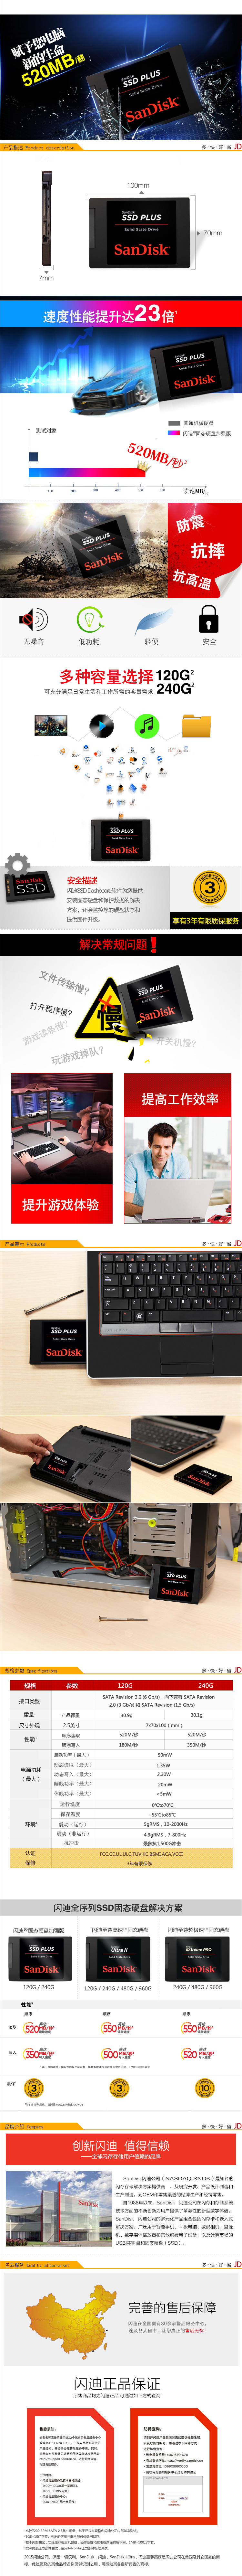 闪迪(SanDisk) 加强版 120G 固态硬盘